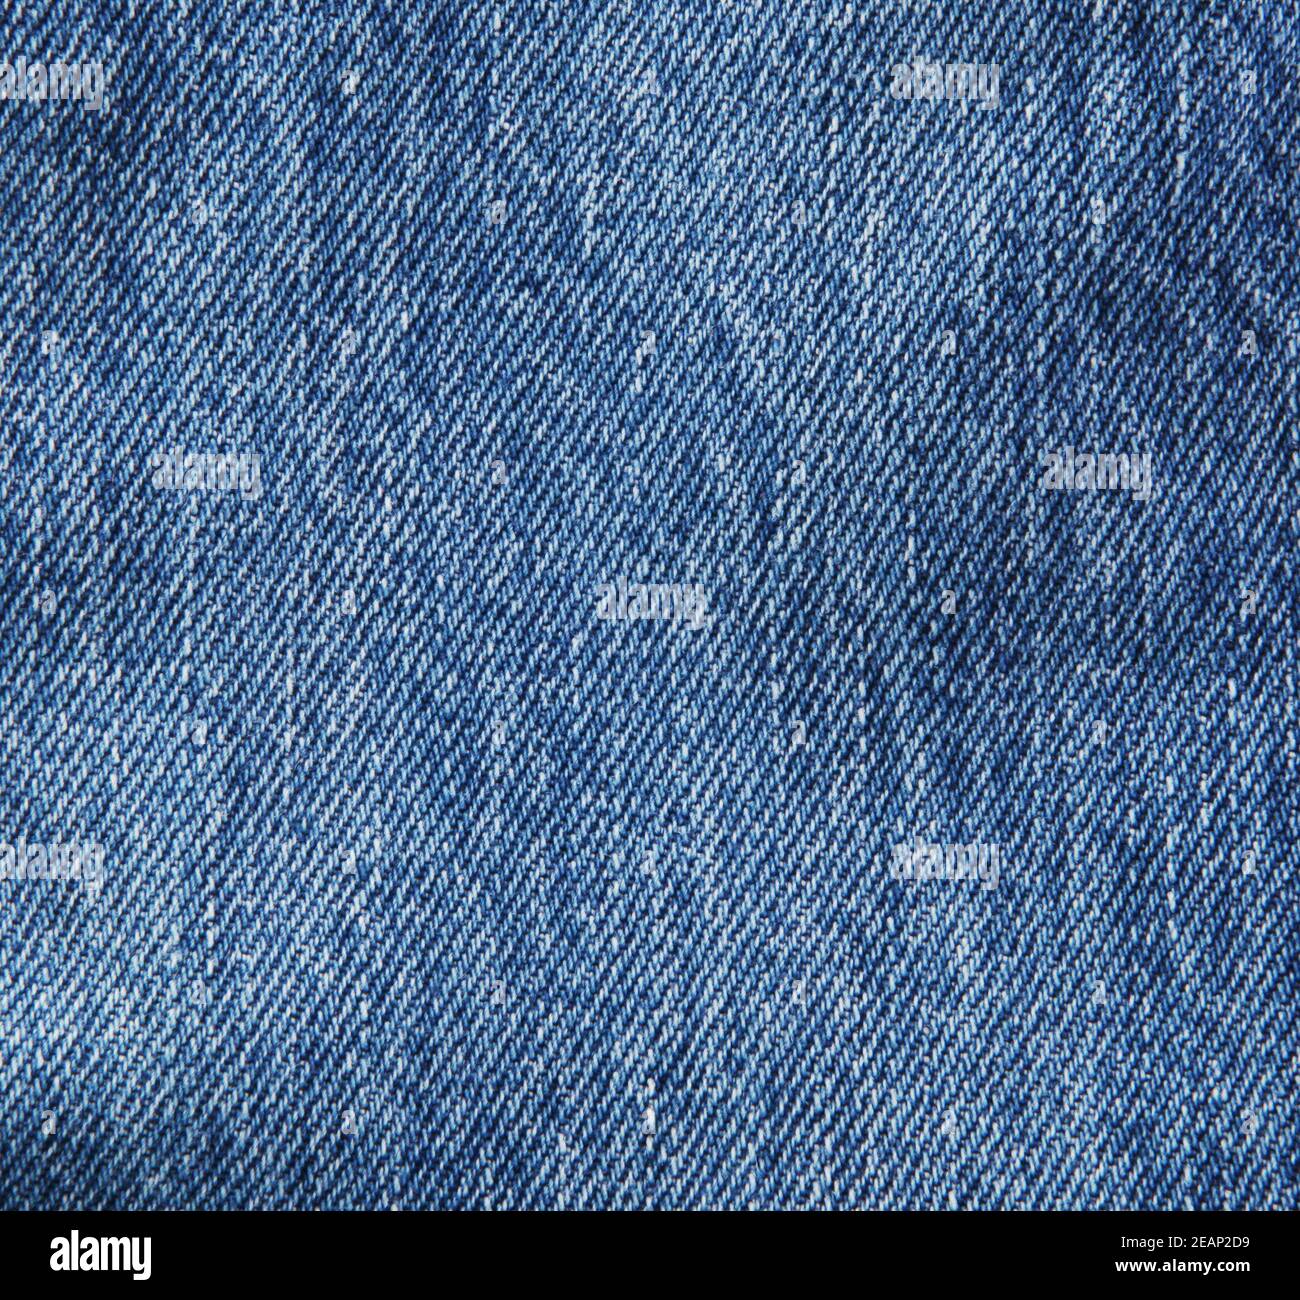 Blue-Jeans Texture Background Banque D'Images